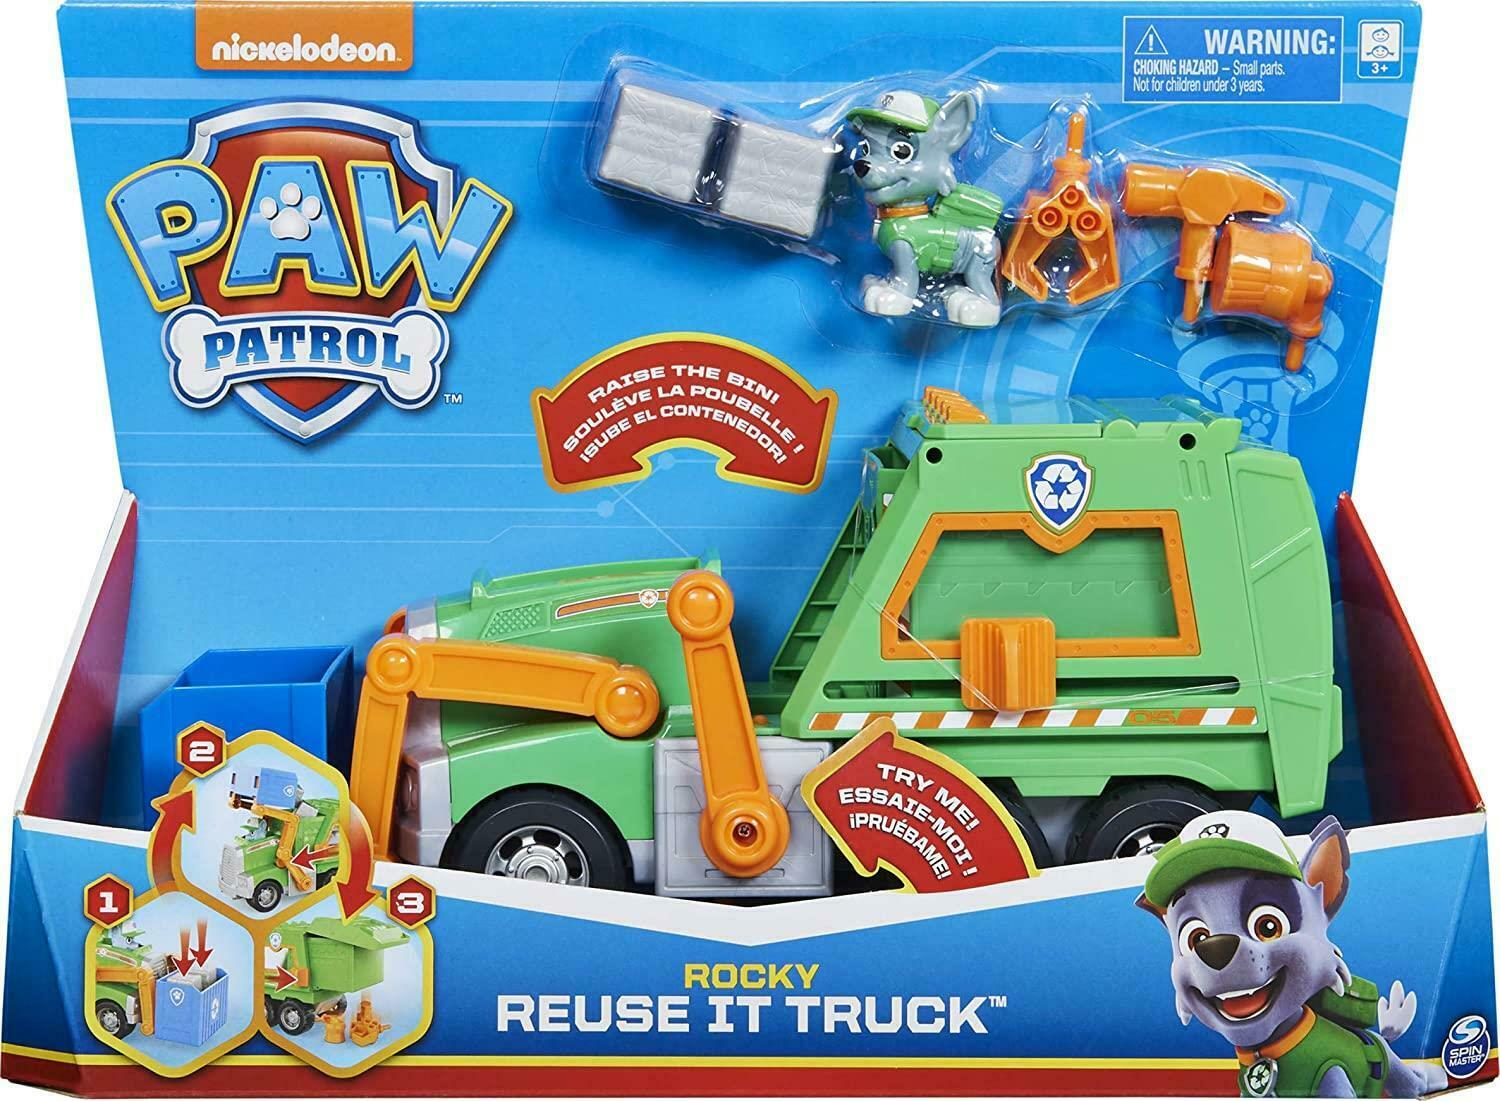 Paw Patrol - Rocky Reuse It Truck